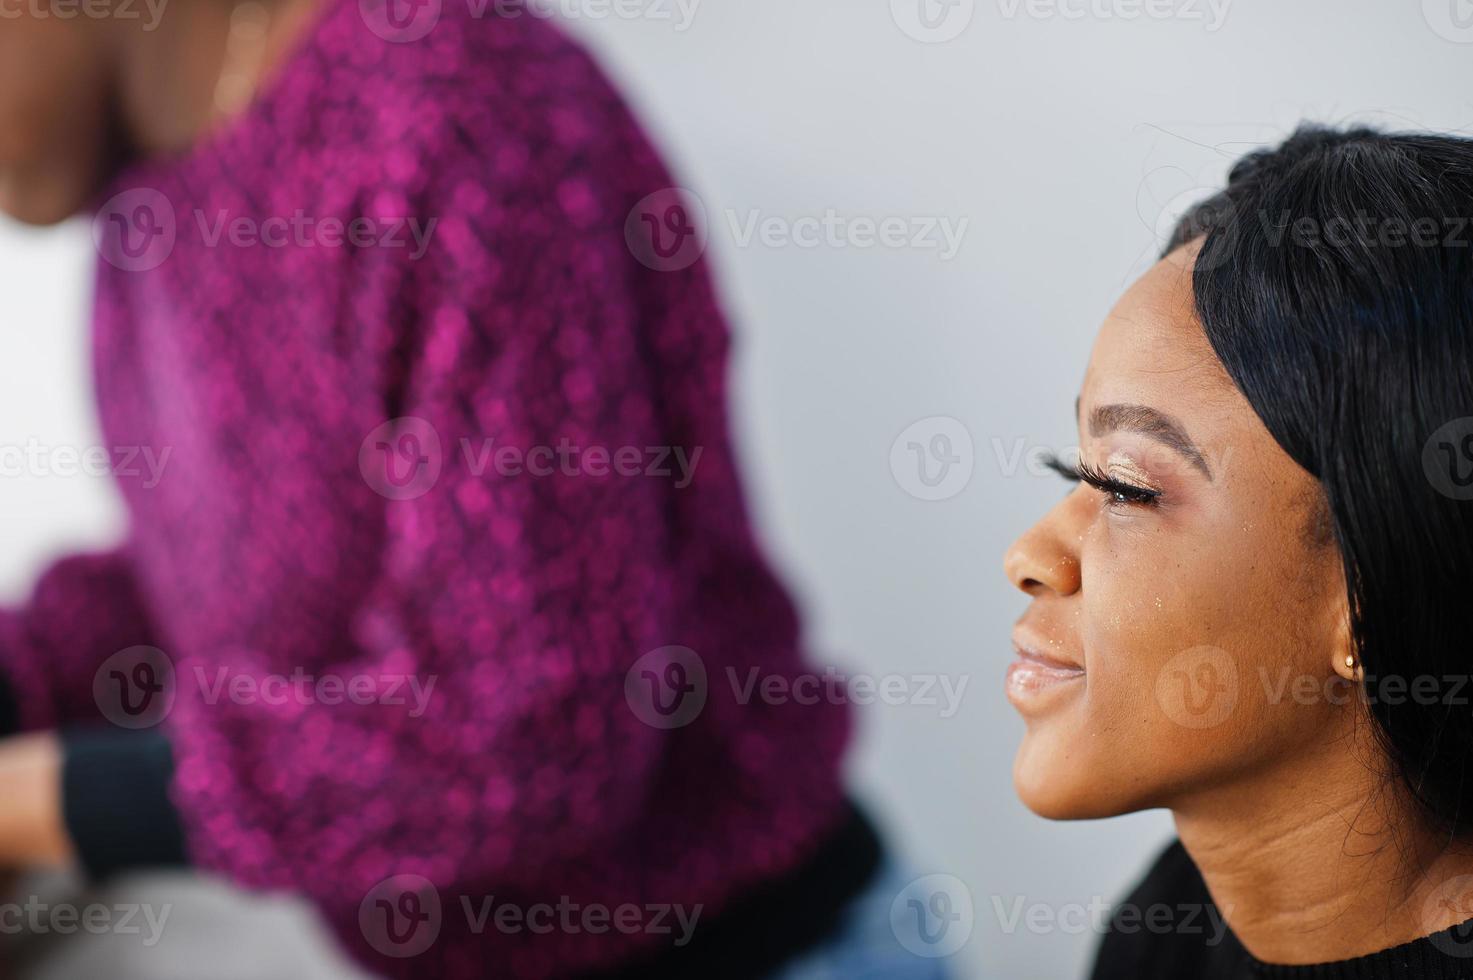 mujer afroamericana aplicando maquillaje por maquillador en el salón de belleza. foto